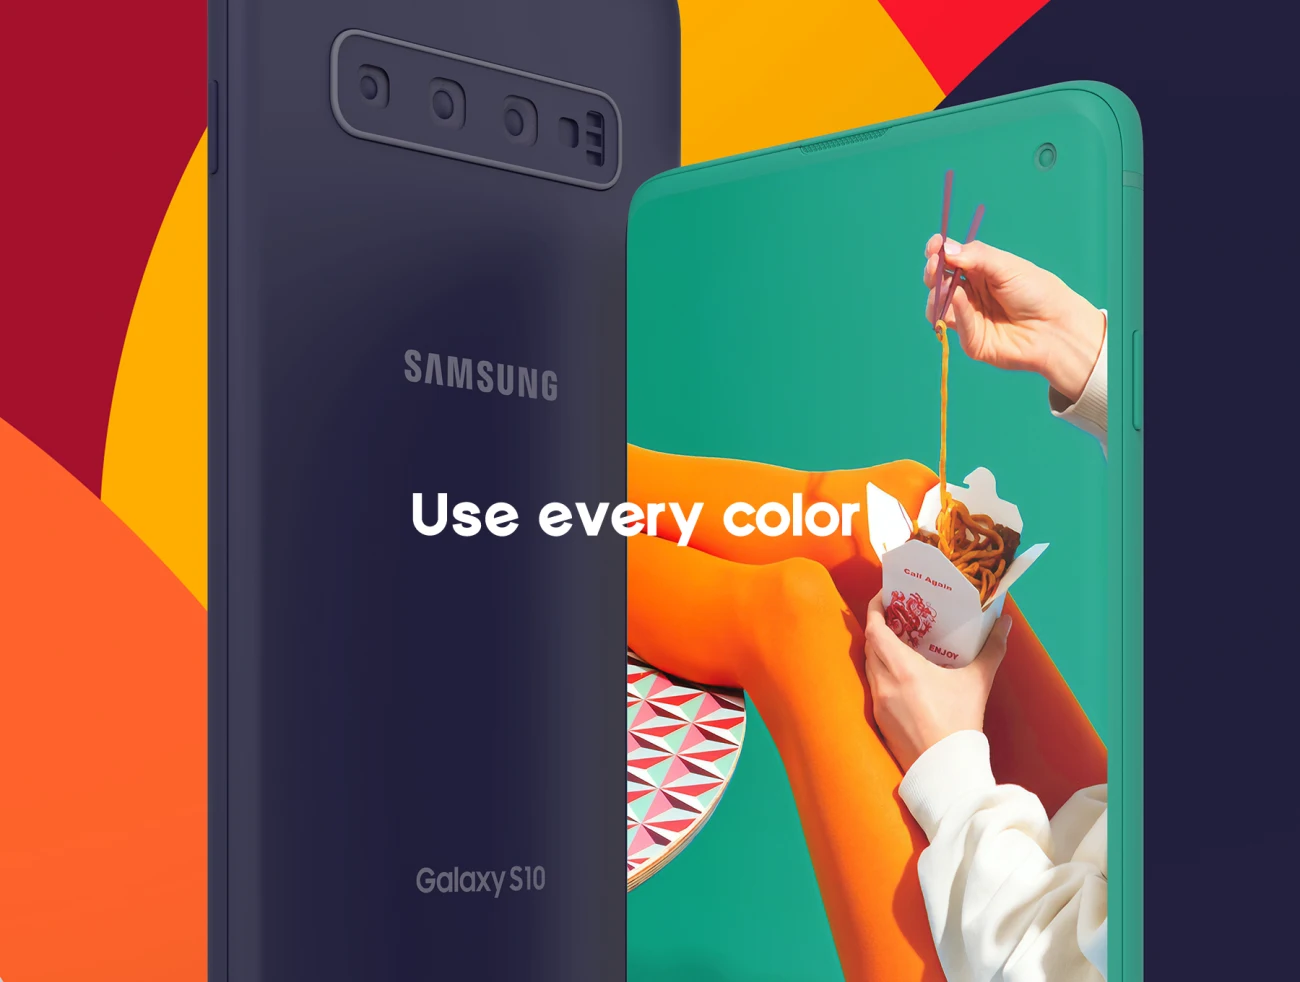 30 Samsung Galaxy S10 Clay Mockup 1 30三星Galaxy S10纸样样机模型1-UI/UX、产品展示、优雅样机、创意展示、办公样机、实景样机、手机模型、手表样机、样机、简约样机-到位啦UI